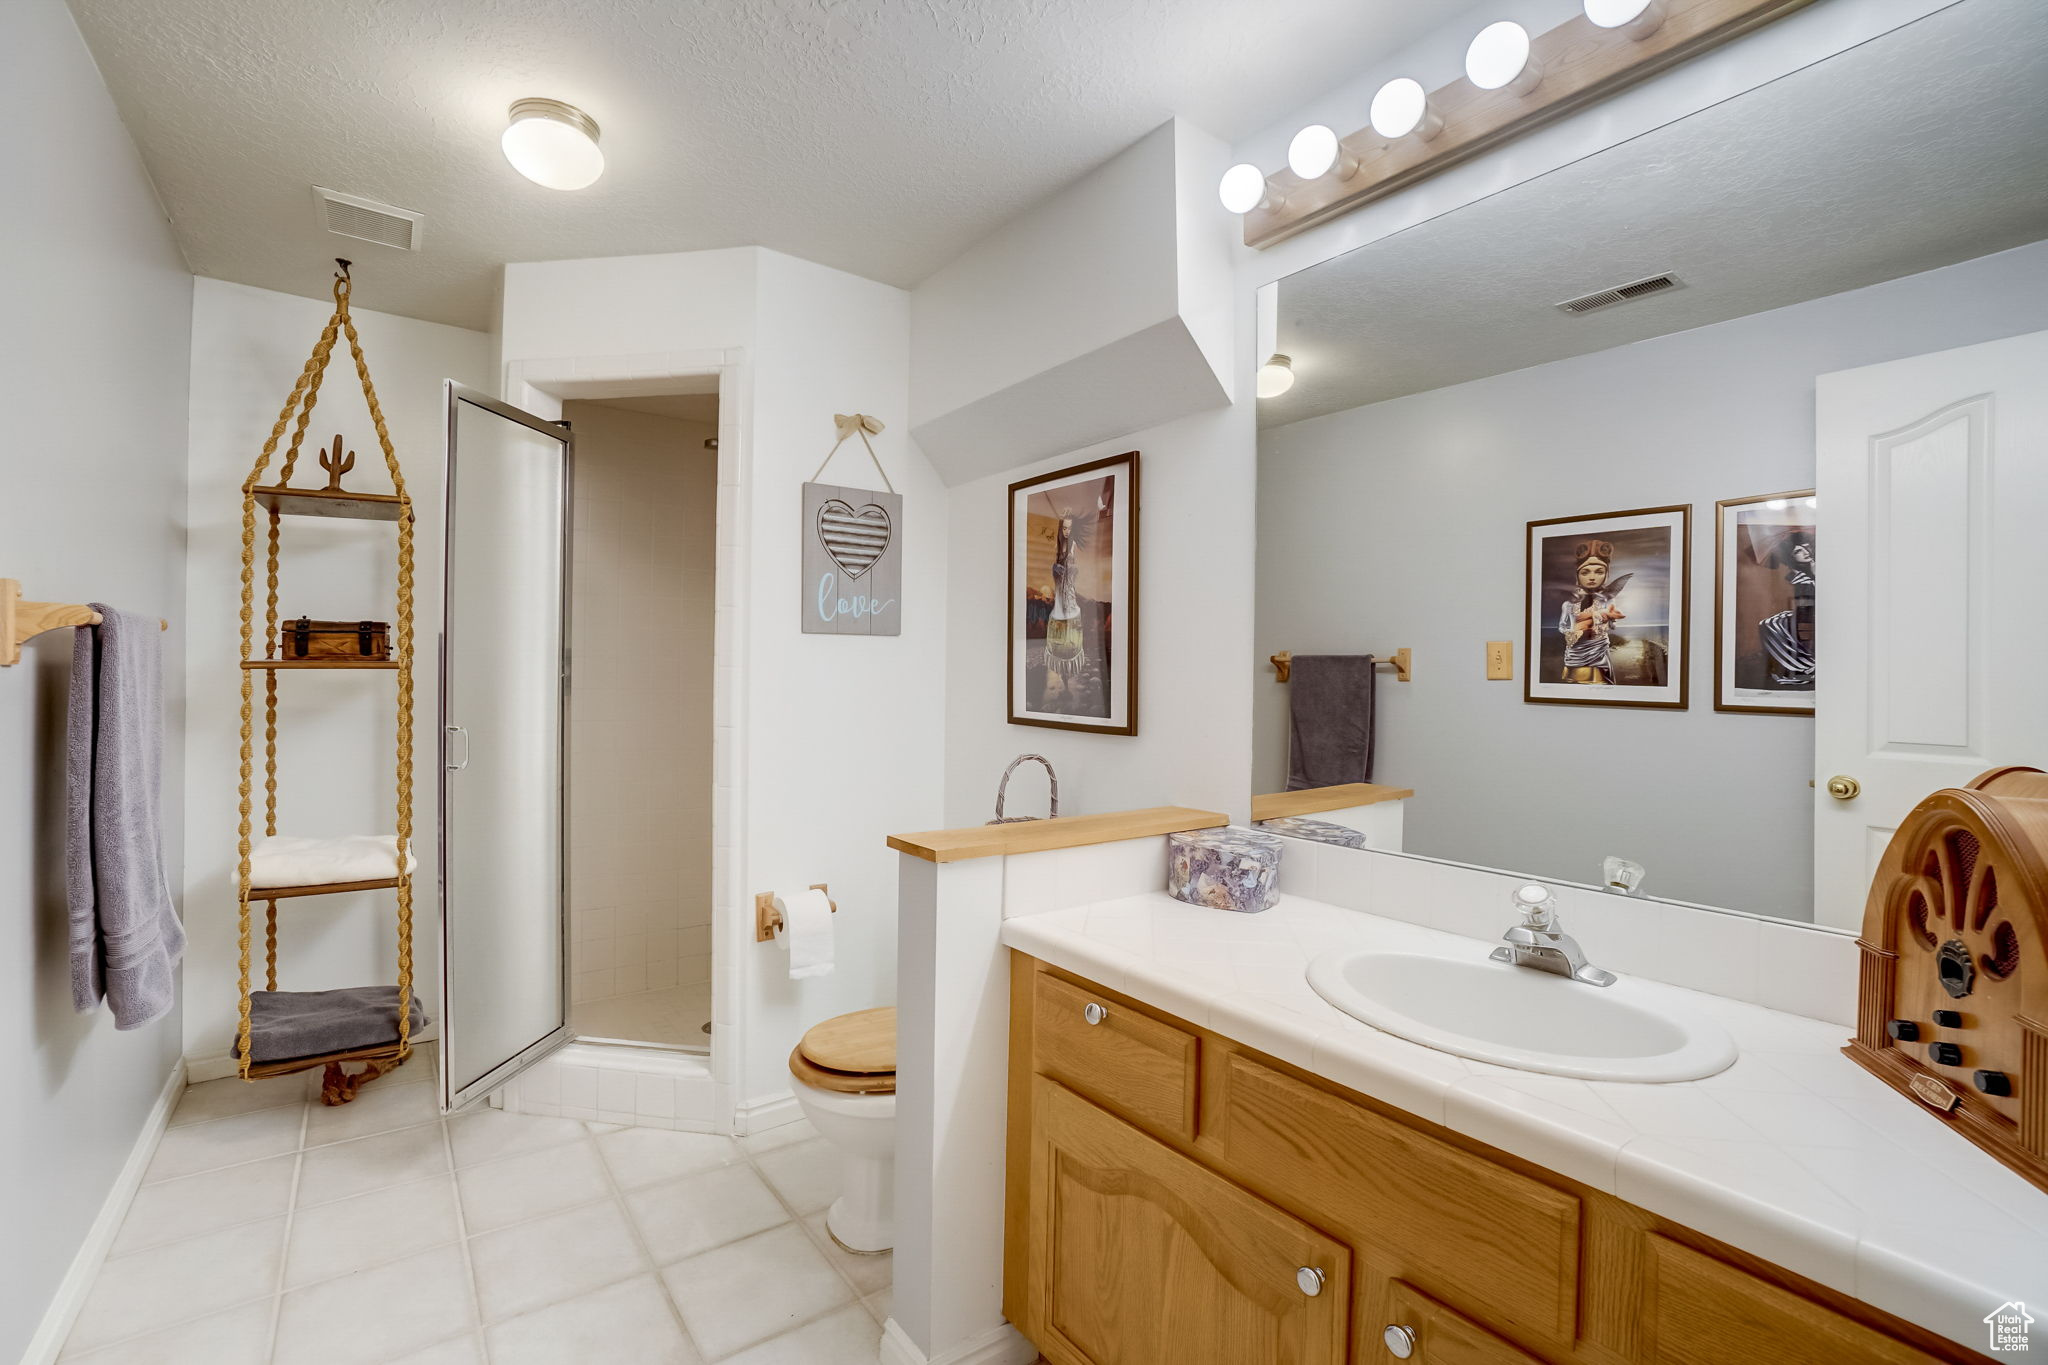 5304 S CASTLEGATE, Murray, Utah 84117, 4 Bedrooms Bedrooms, 17 Rooms Rooms,2 BathroomsBathrooms,Residential,For sale,CASTLEGATE,1990084